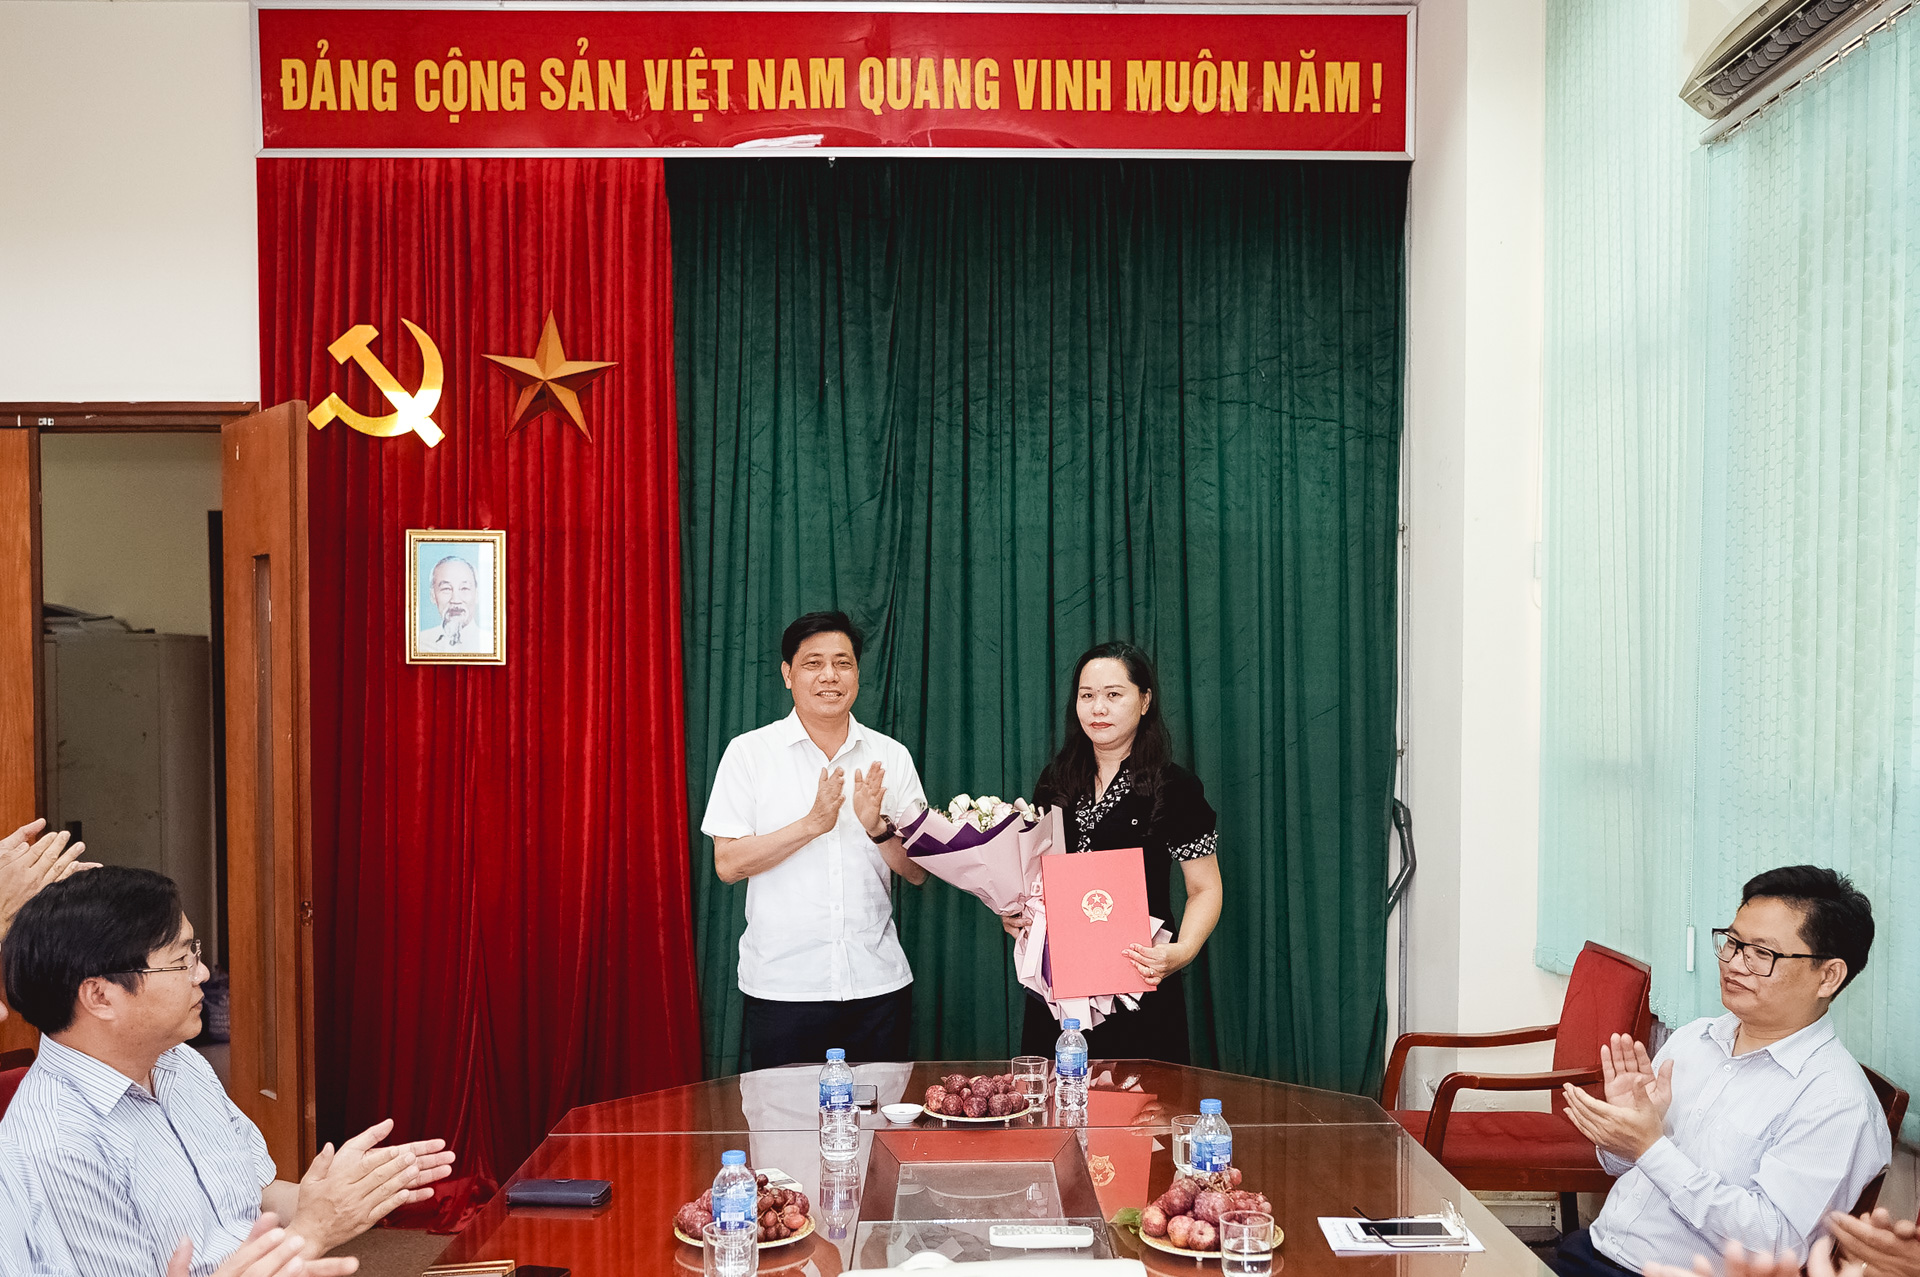 Thứ trưởng Nguyễn Ngọc Đông trao quyết định bổ nhiệm bà Nguyễn Thanh Hoa làm Phó Tổng biên tập Tạp chí Giao thông vận tải